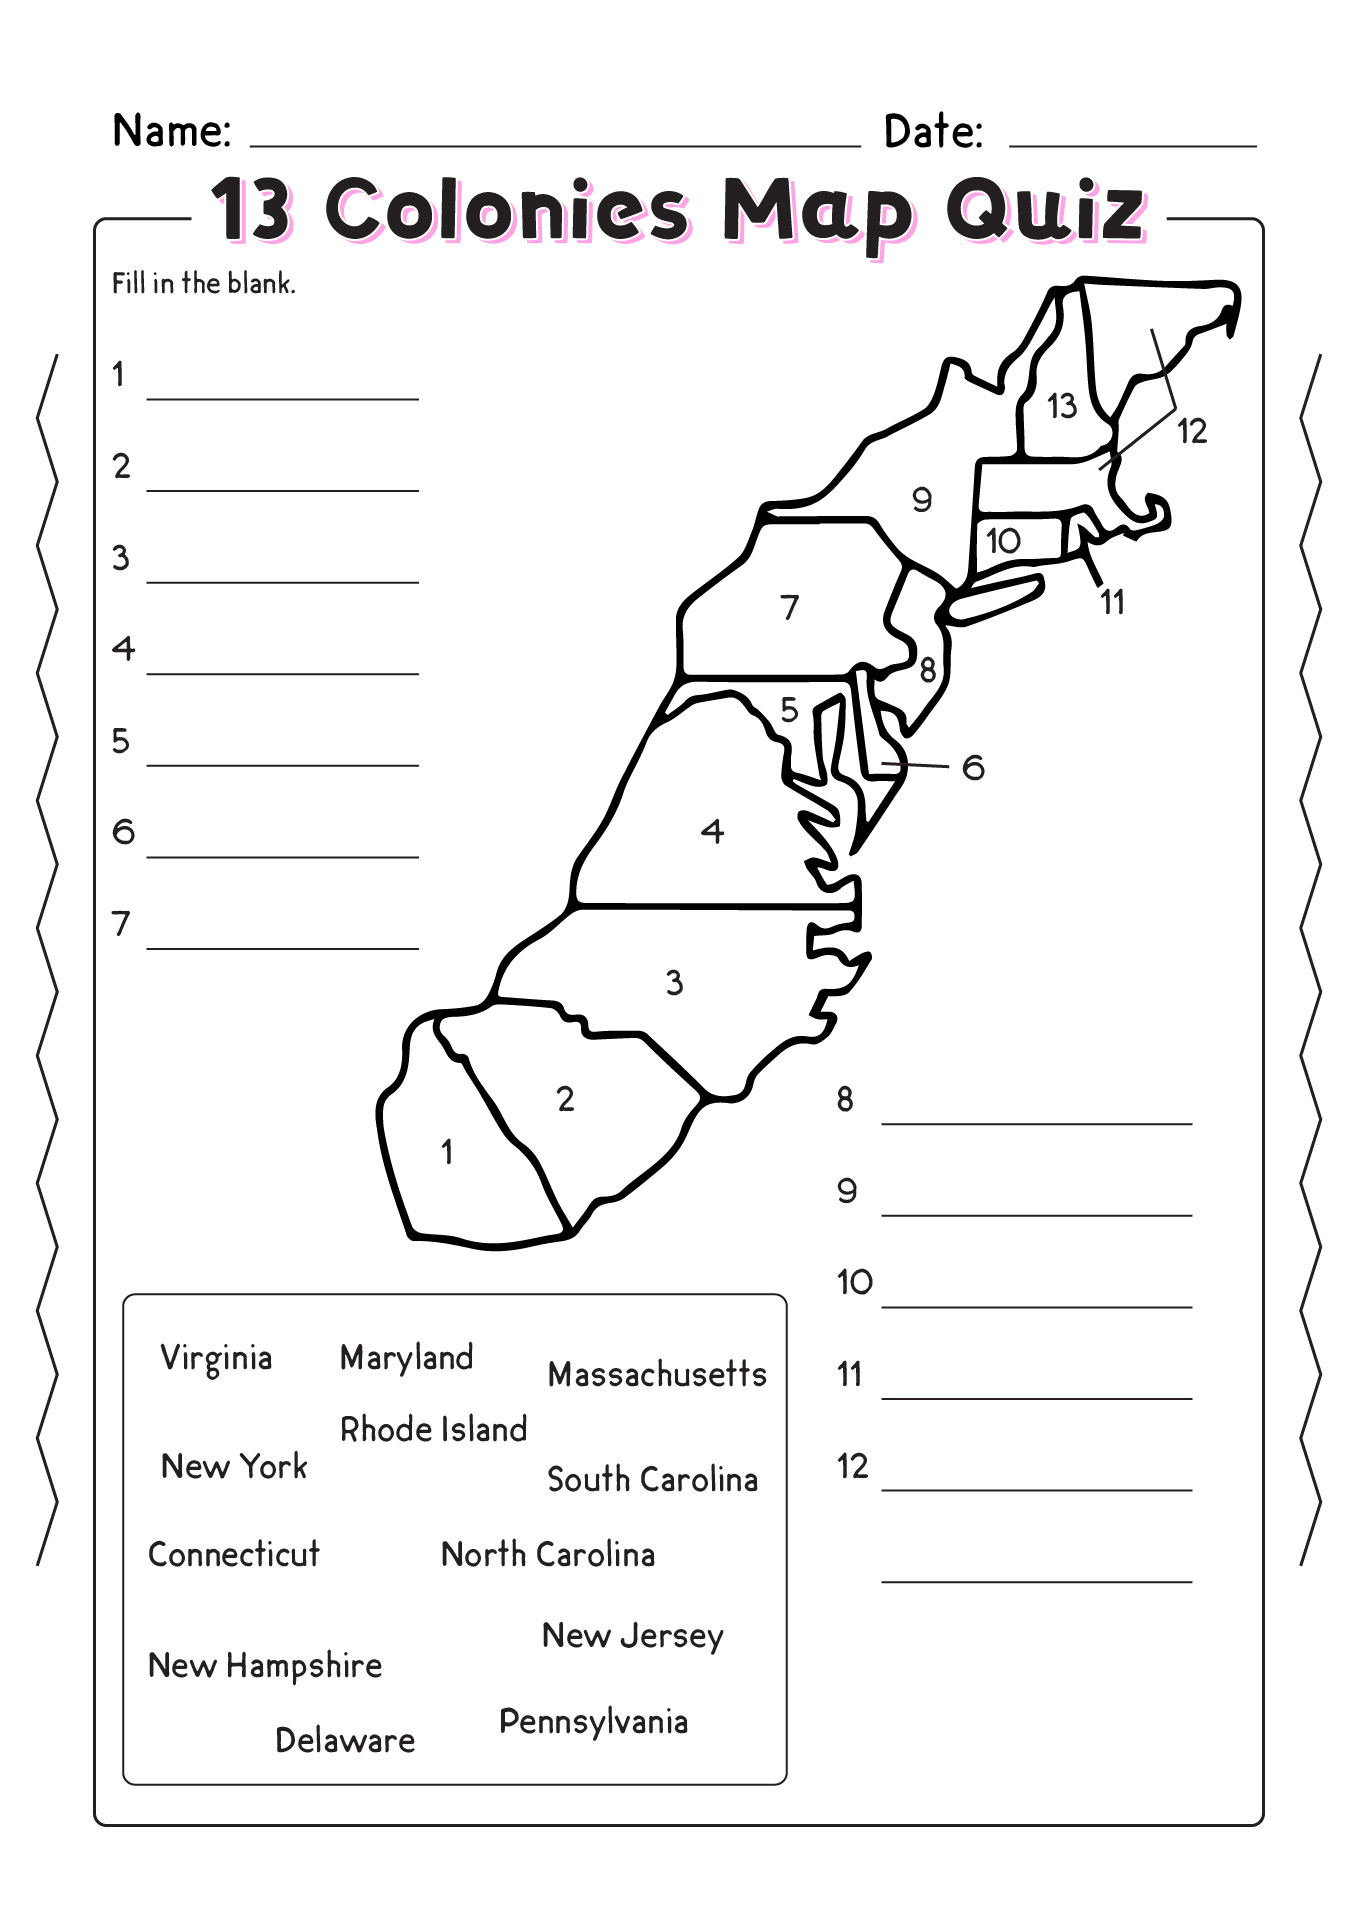 13 Colonies Map Quiz